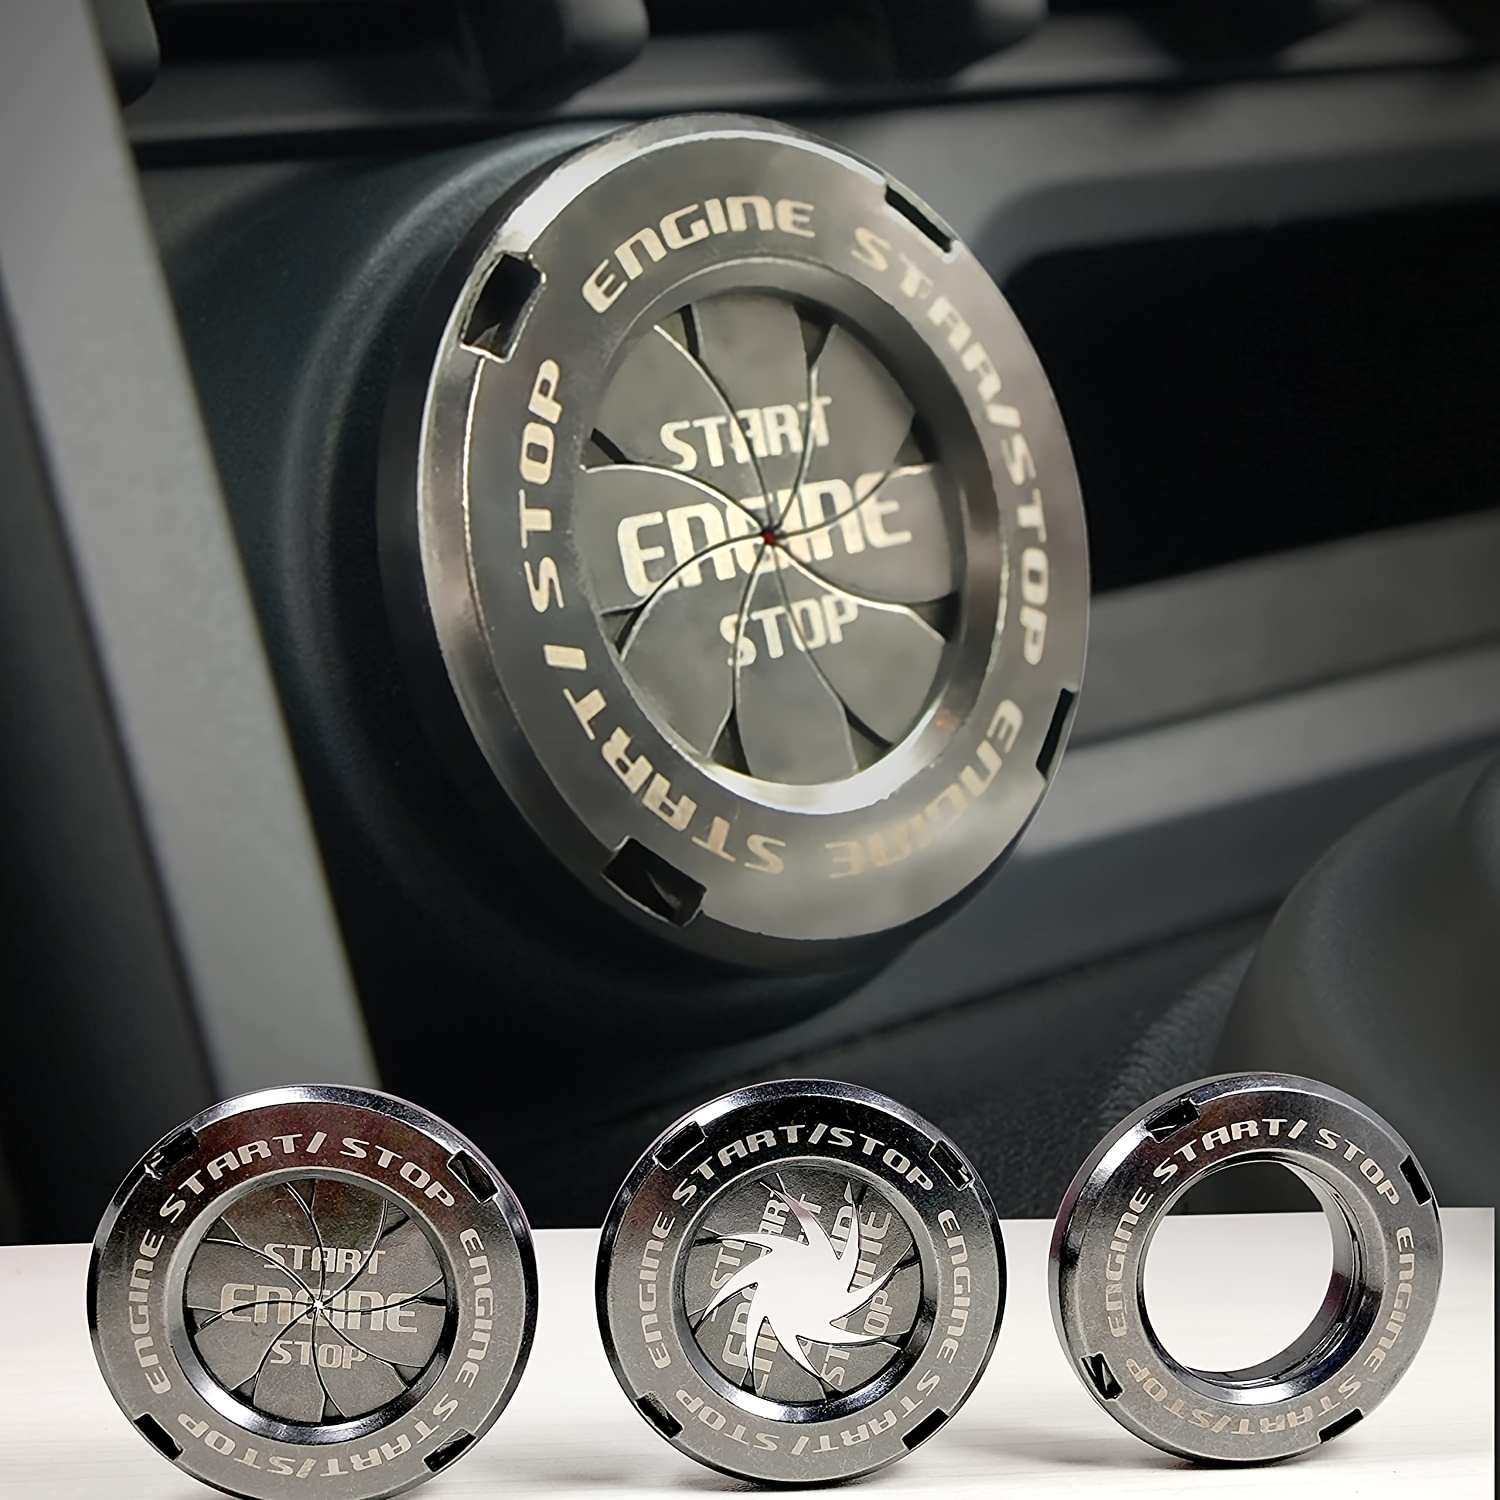 Kit de couvercle de bouton d'arrêt de démarrage du moteur pour Range Rover  noir